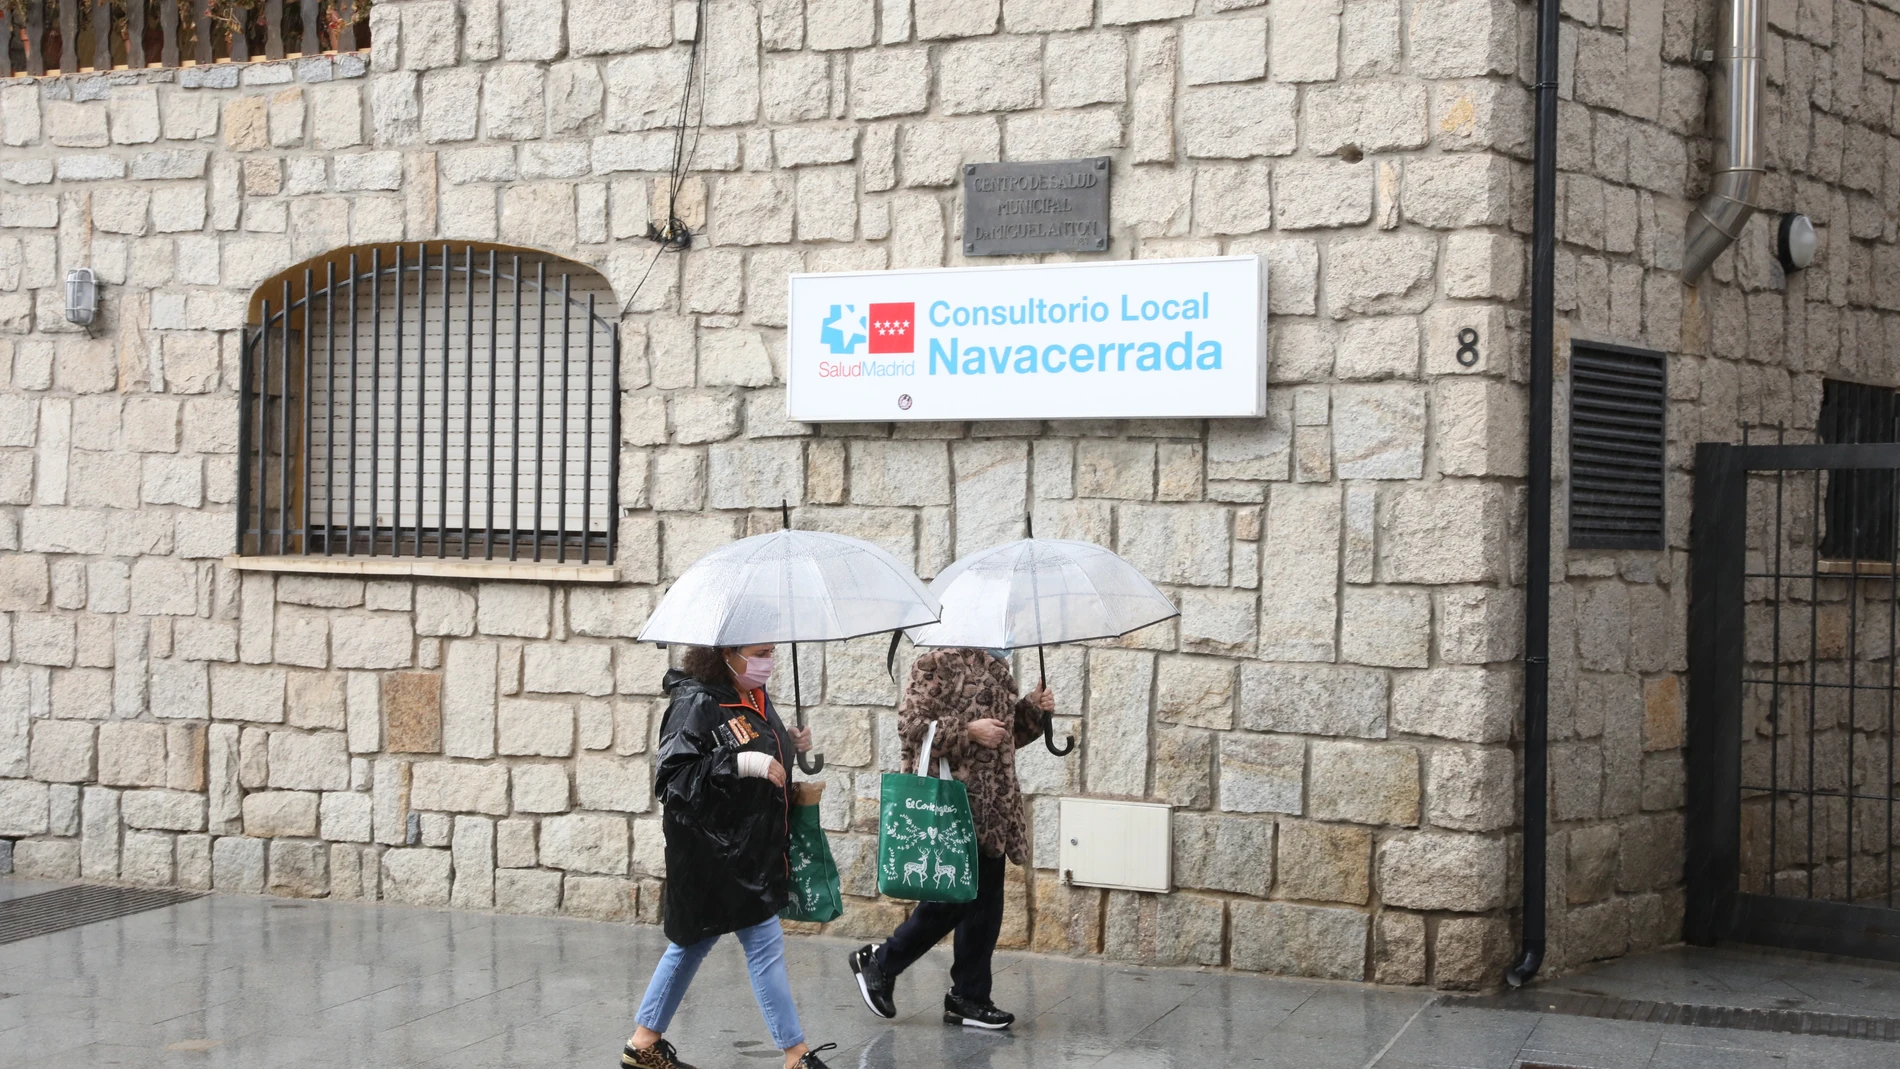 Consultorio local Navacerrada durante el primer día de restricciones por movilidad en Navacerrada, Madrid